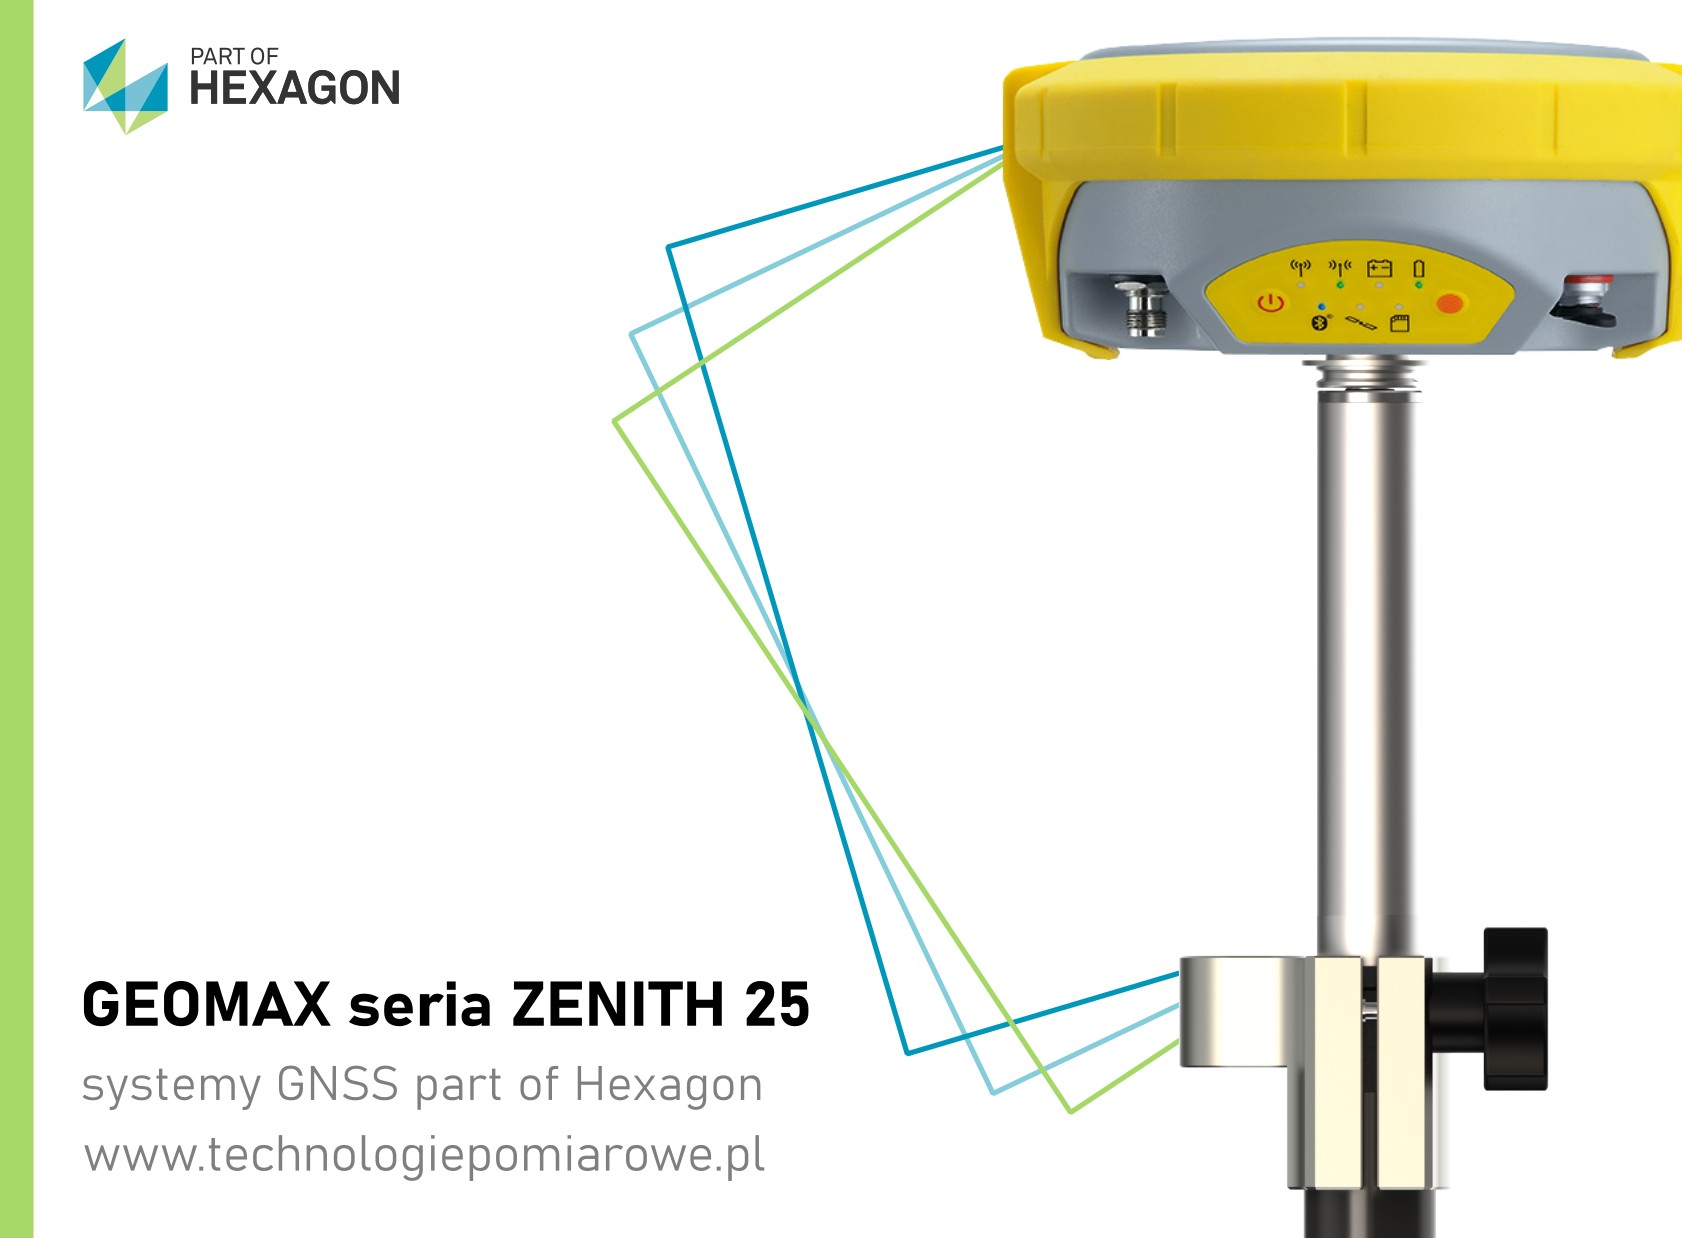 Profesjonalne zestawy GNSS odbiorniki geodezyjne RTK Geomax seria Zenith 25 oraz Zenith 25; Używane prefesjonalne odbiorniki GNSS szwajcarskiej marki Geomax seriaz Zenith 25; Pełna oferta systemów GNSS odbiorniki marki: Geomax; używany zestaw rtk gnss marki Geomax model Zenith 25; w naszejofercie również inne używane odbiorniki gnss rtk różnych producentów; kolida; ruide; stonex; chc; hi-target; komis sprzętu geodezyjnego; używany zestaw RTK; chiński odbiornik rtk; tani odbiornik gps rtk; zestaw gps rtk; ranking gps geodezyjnych; zestaw gnss rtk; ruide gps opinie; odbiornik kolida; ruide nova r6; jaki gps dla geodety; profesjonalne rozwiązania pomiarowe zestawy odbiorników gnss rtk; odbiornik gnss rtk south; south galaxy g1; odbiornik rtk south galaxy g6; tani zestaw rtk; zestaw gps rtk cena; poleasingowy sprzęt geodezyjny; chiński gps geodezyjny; zestaw gnss; odbiornik rtk; odbiornik rtk gnss ruide; odbiornik ruide; ruide comet r8i; ruide pulsar; ruide r90i; ruide r6p; ruide pulsar r6p; ruide opinie; odbiornik rtk gnss south; south gps; gps gnss; używany odbiornik gps rtk; Pełna oferta systemów GNSS odbiorniki marki: Geomax; używany zestaw rtk gnss marki Geomax model Zenith 10; w naszejofercie również inne używane odbiorniki gnss rtk różnych producentów; kolida; ruide; stonex; chc; hi-target; komis sprzętu geodezyjnego; używany zestaw RTK; chiński odbiornik rtk; tani odbiornik gps rtk; zestaw gps rtk; ranking gps geodezyjnych; zestaw gnss rtk; ruide gps opinie; odbiornik kolida; ruide nova r6; jaki gps dla geodety; profesjonalne rozwiązania pomiarowe zestawy odbiorników gnss rtk; odbiornik gnss rtk south; south galaxy g1; odbiornik rtk south galaxy g6; tani zestaw rtk; zestaw gps rtk cena; poleasingowy sprzęt geodezyjny; chiński gps geodezyjny; zestaw gnss; odbiornik rtk; odbiornik rtk gnss ruide; odbiornik ruide; ruide comet r8i; ruide pulsar; ruide r90i; ruide r6p; ruide pulsar r6p; ruide opinie; odbiornik rtk gnss south; south gps; gps gnss; używany odbiornik gps rtk; odbiornik geodezyjny Geomax Zenith 10; Zenith 35 PRO; GPS Zenith; Odbiornik GPS GEOMAX; GeoMax Zenith 20; GeoMax opinie; komis sprzętu geodezyjnego; GeoMax zenith 40; Technologie pomiarowe Geomax GPS geodezyjny; Geomax szwajcaria; Komis geodezyjny; Geoline Bydgoszcz; Geoline Geomax; sprzęt pomiarowy Geomax; Nowy model odbiornika GPS Zenith35; Geomax GPS Zenith 20; Tachimetr GEOMAX; GeoMax Zoom 70; Tachimetr geoline; GPS GEOMAX cena; Geoline sklep; Tachimetr 3D; Komis geodezyjny odbiornik Geomax GPS GLONASS; GeoExpo store komis geodezyjny;